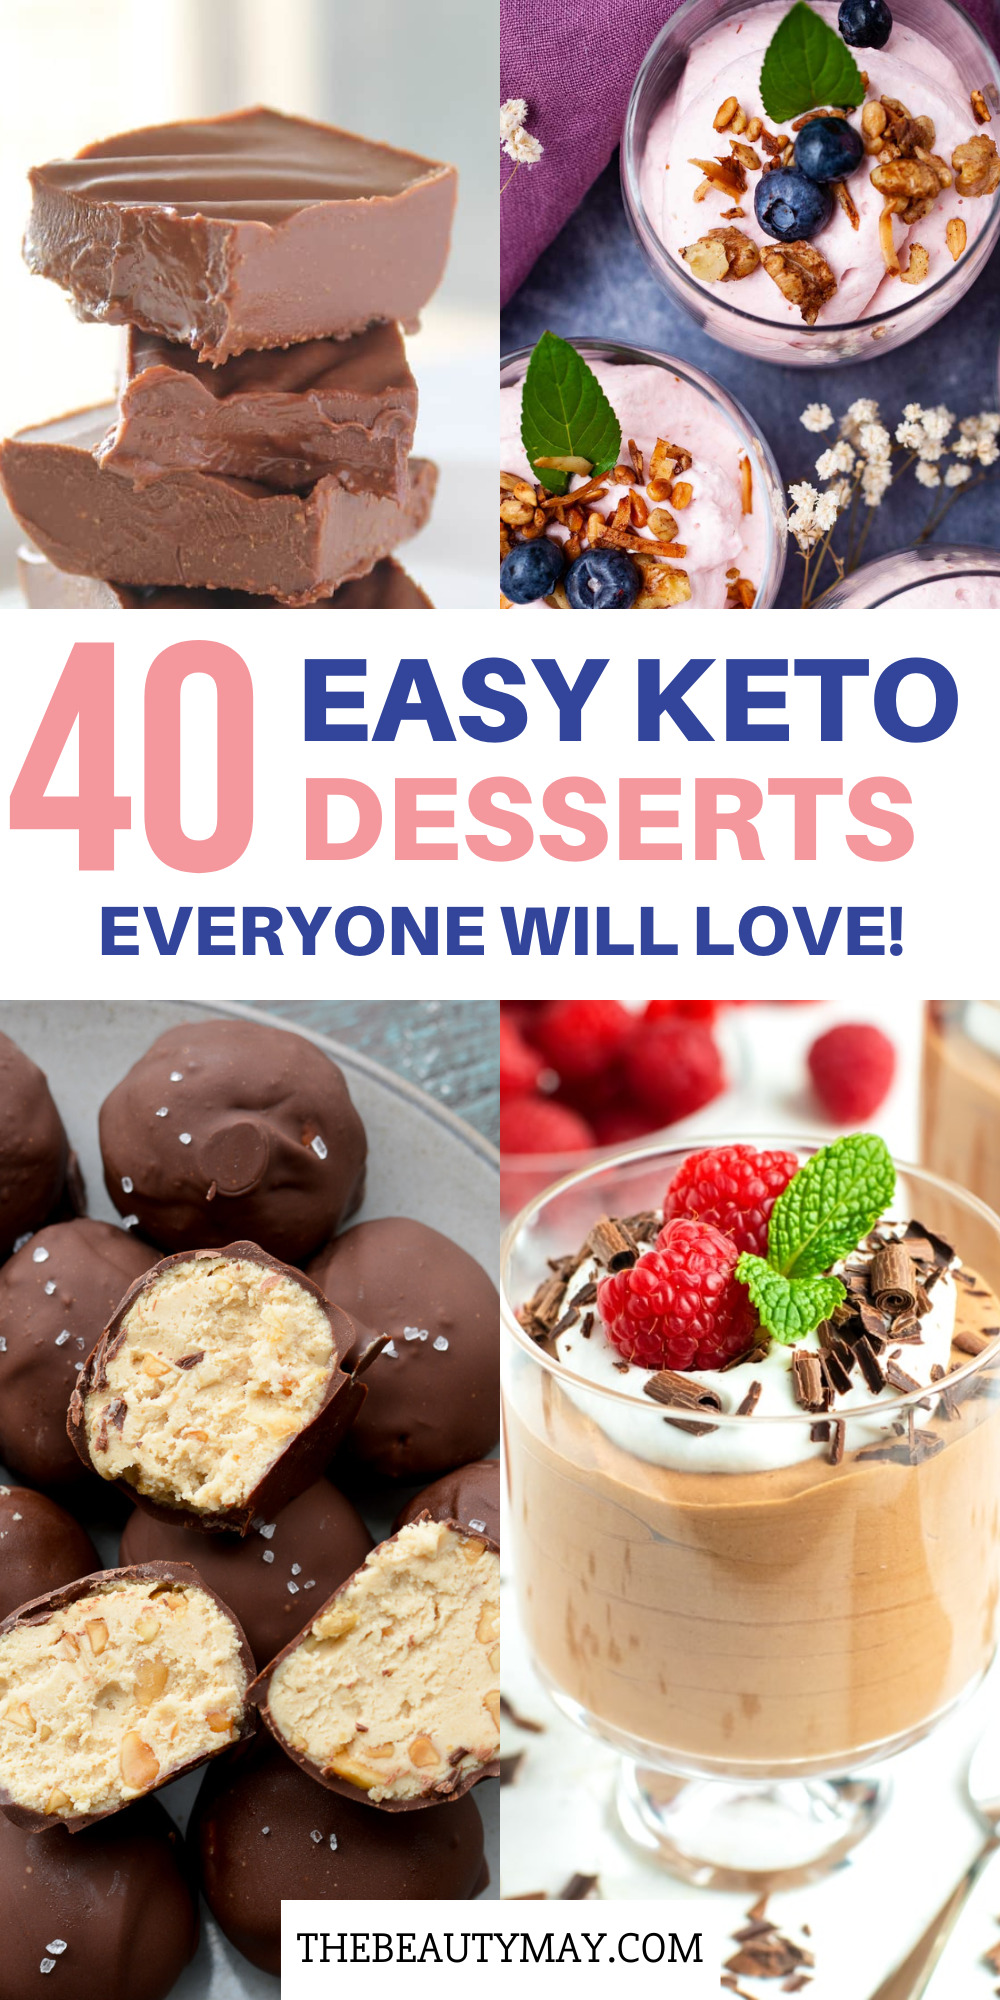 keto dessert recipes easy low carb